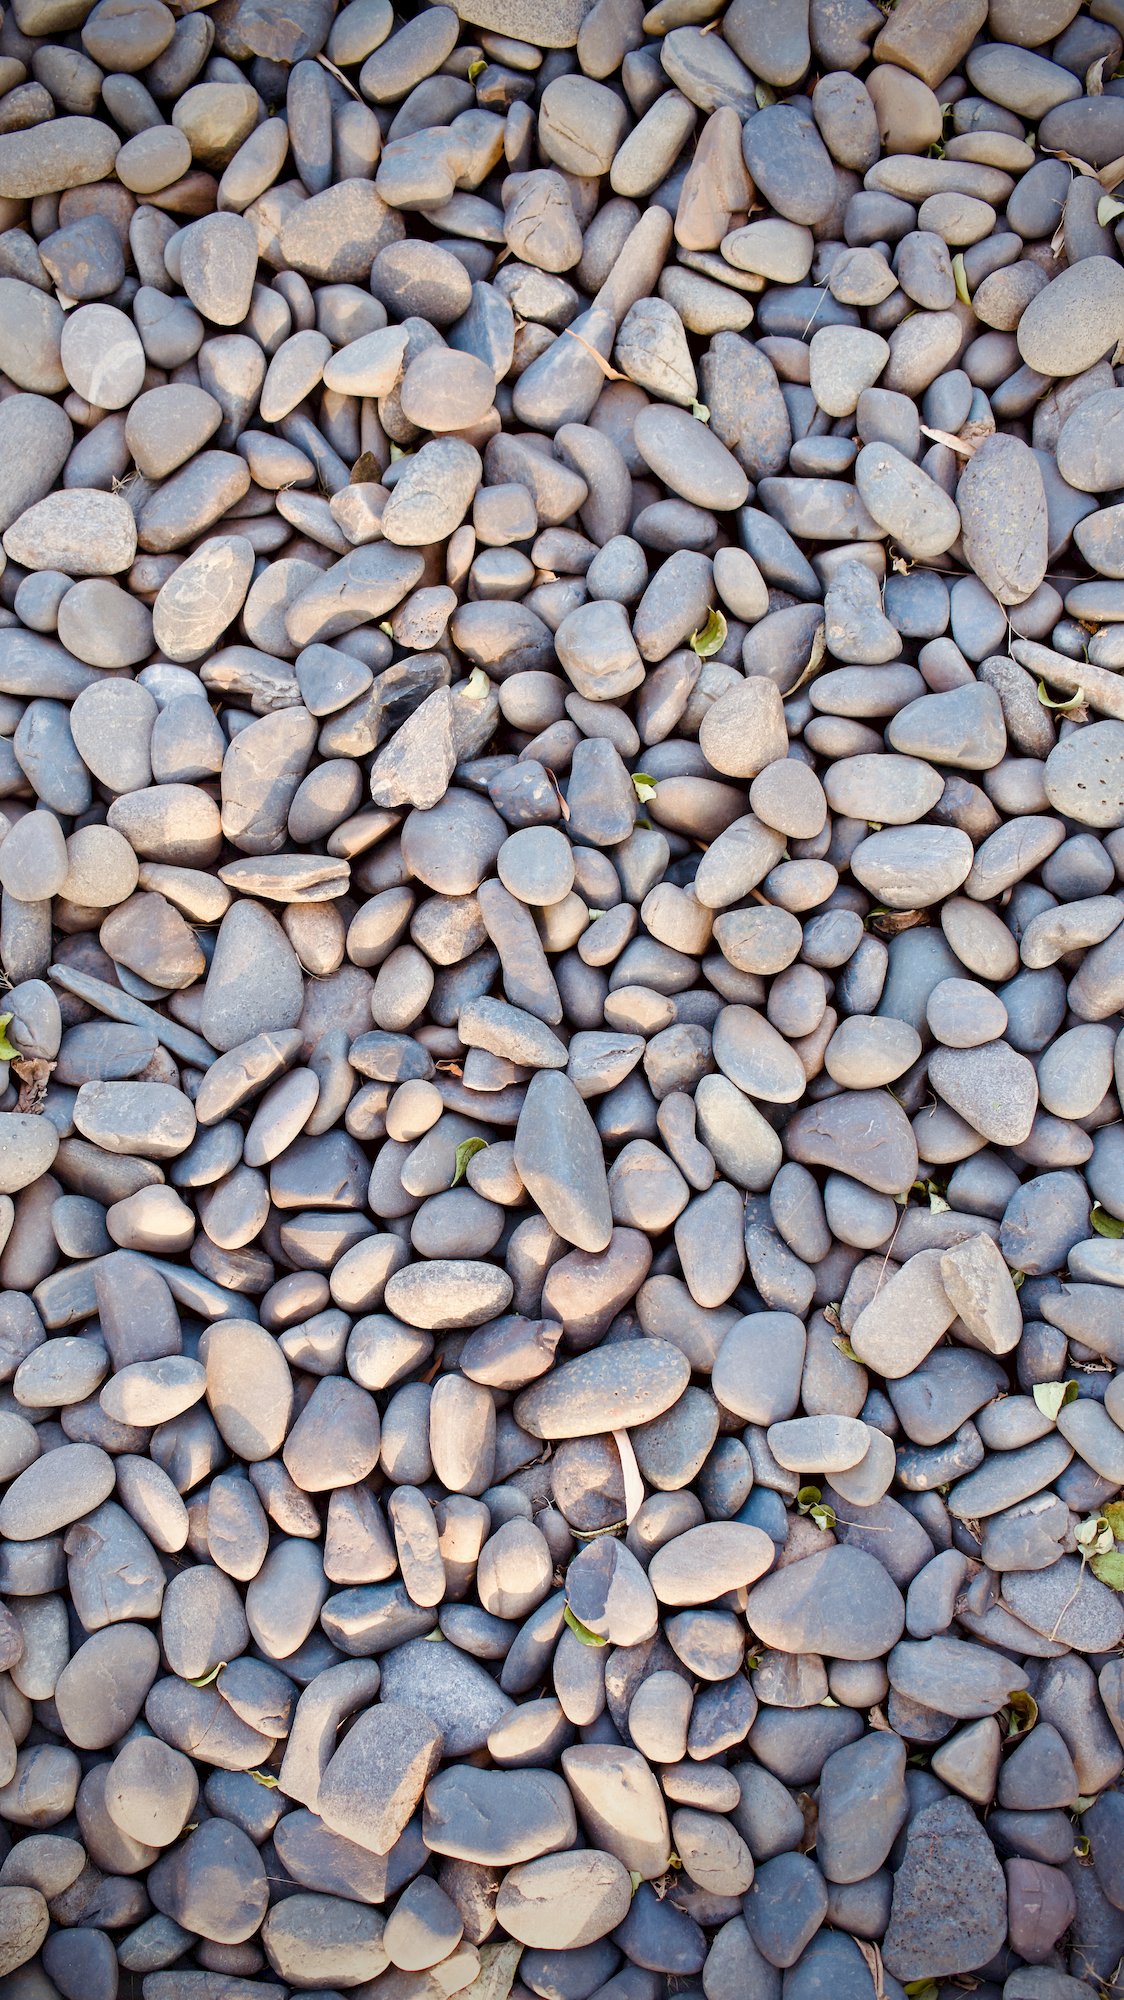 Gray pebbles / round stones